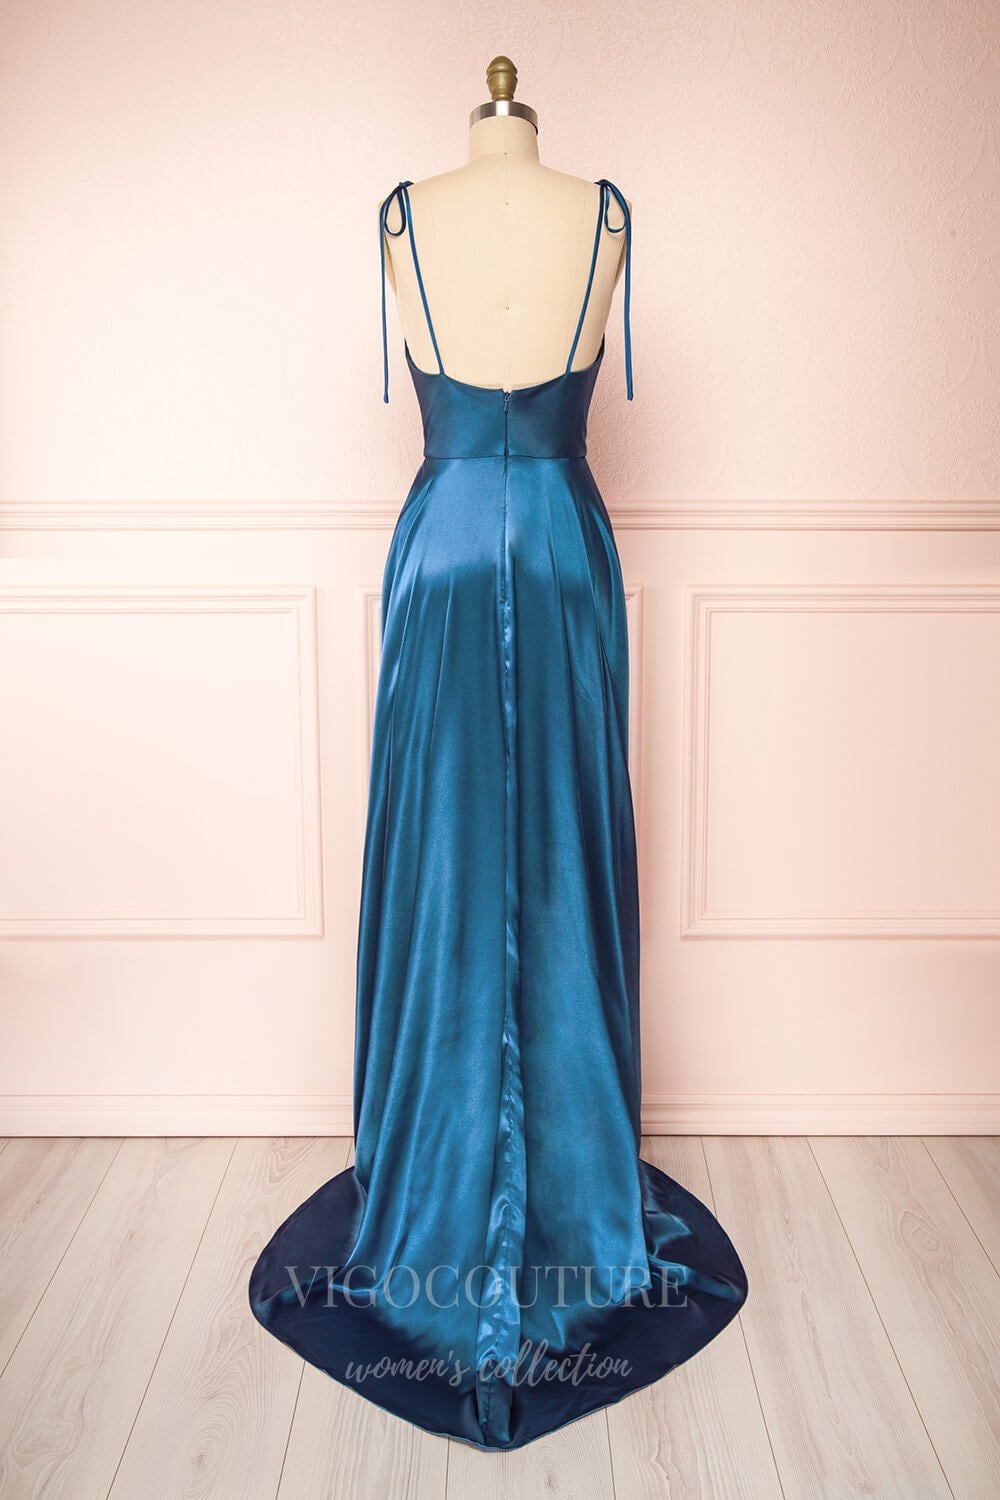 vigocouture-Blush Spaghetti Strap Prom Dress 20575-Prom Dresses-vigocouture-